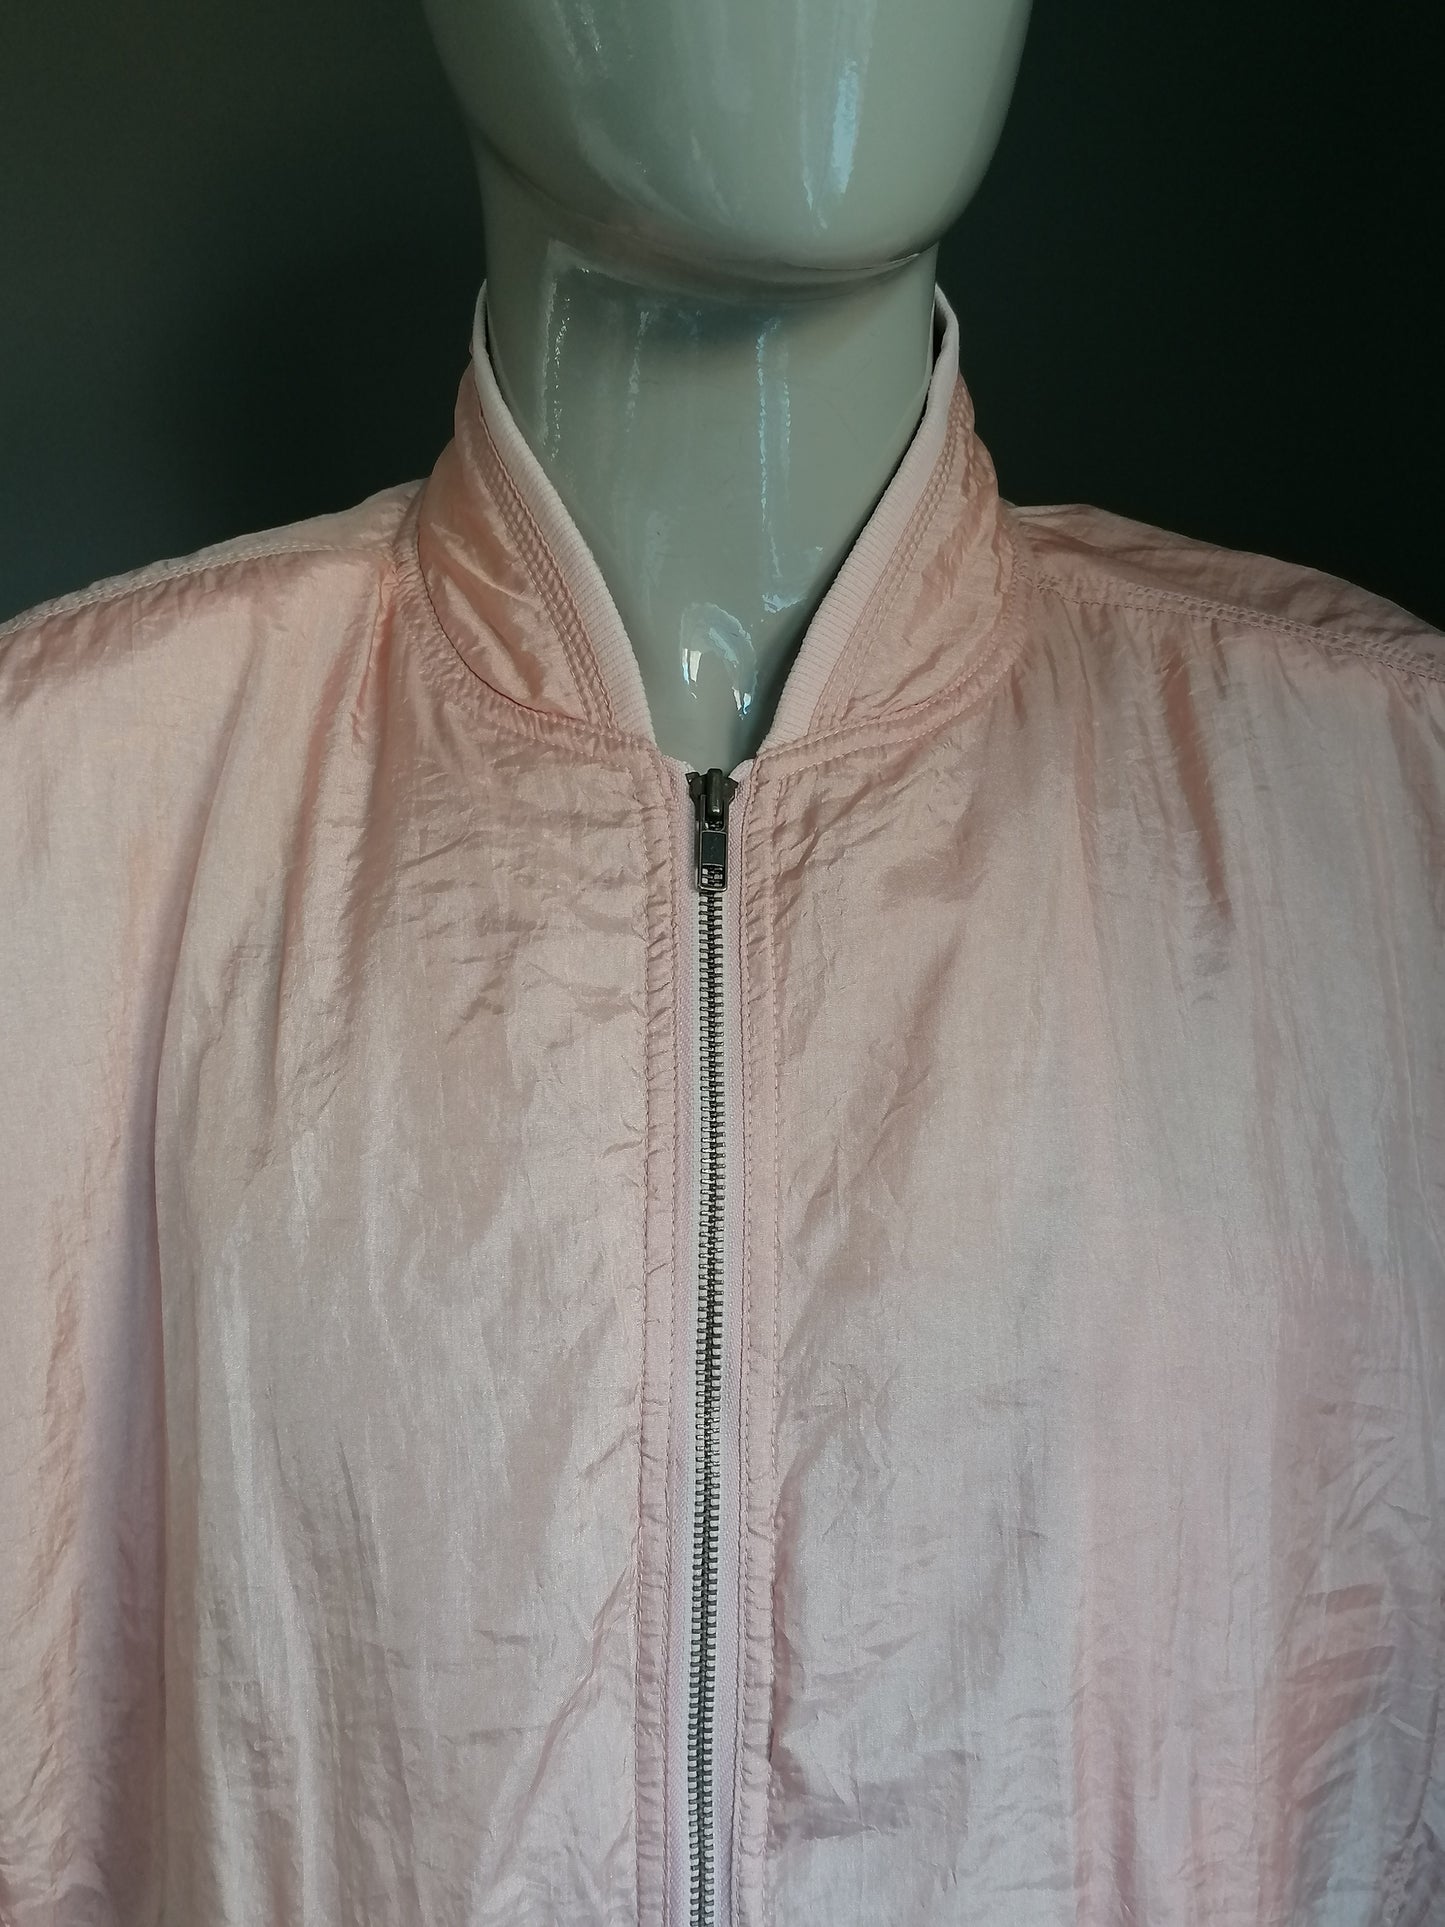 Vintage Central Park 80S-90-Trainingsjacke mit Schulterfüllungen. Rosa gefärbt. Größe xxl / 2xl.